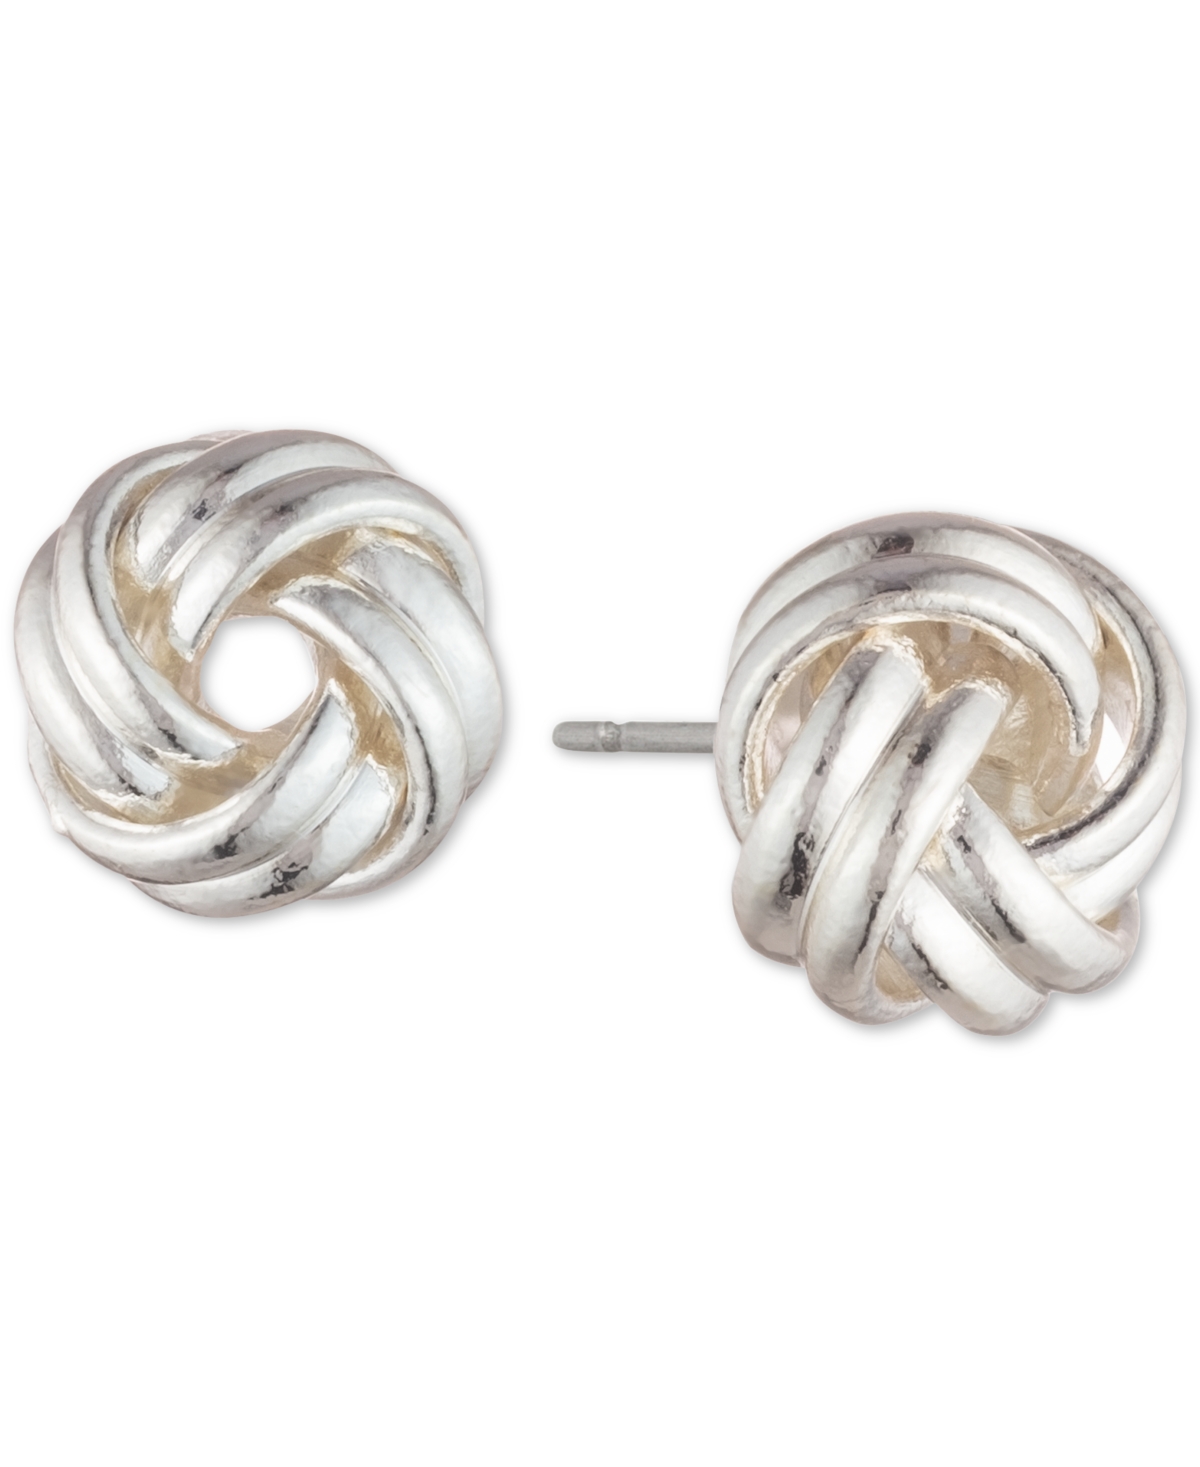 Knot Stud Earrings - Silver